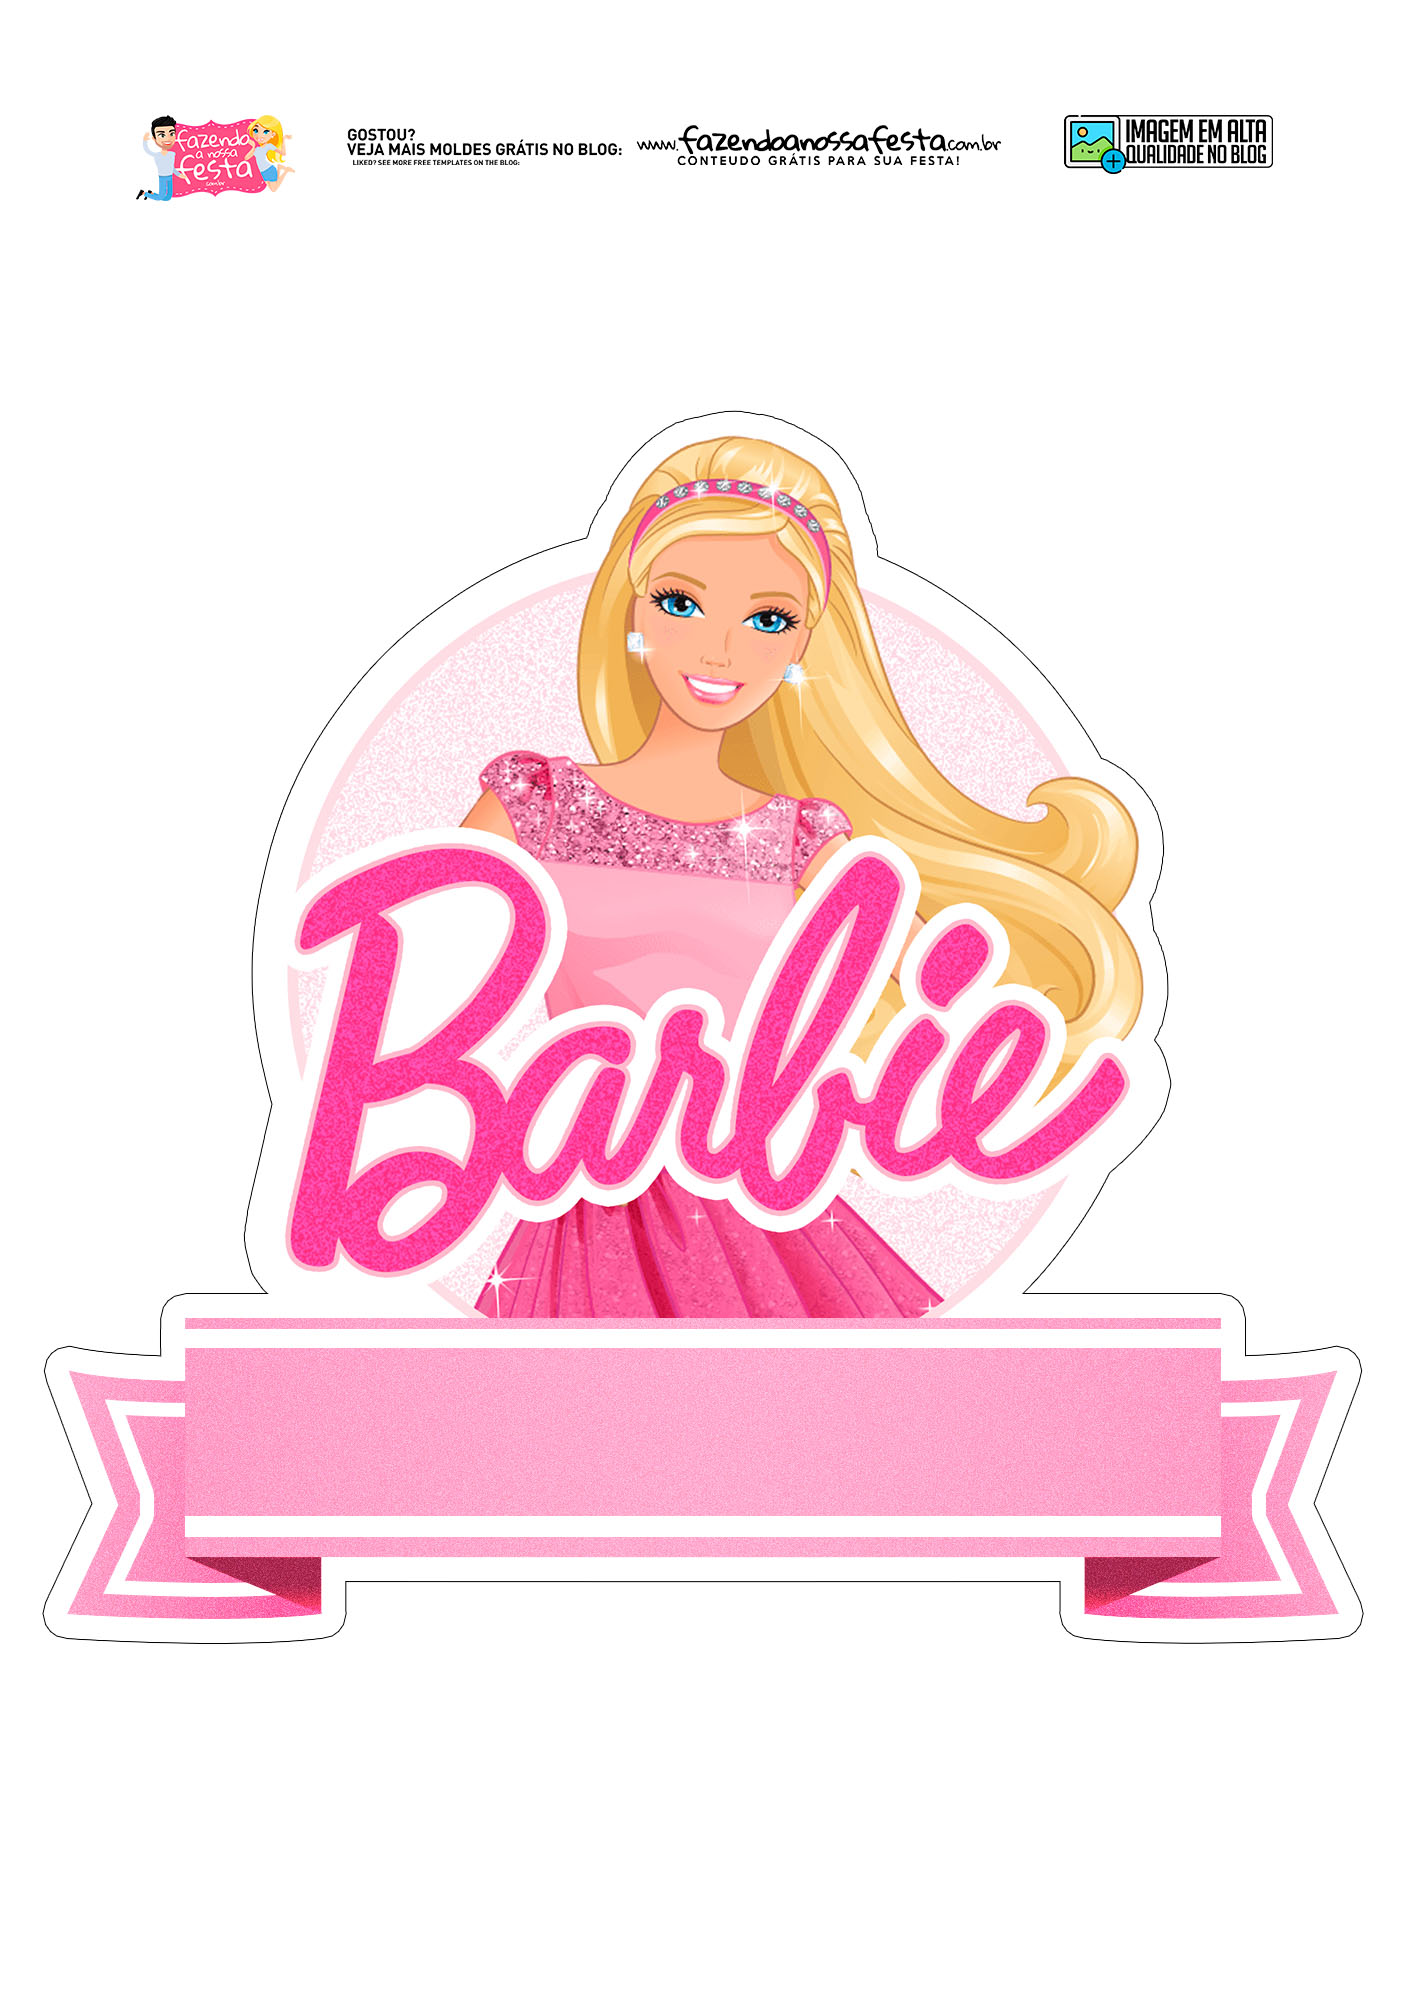 Topo de Bolo Barbie o filme 2023 - PRONTA ENTREGA